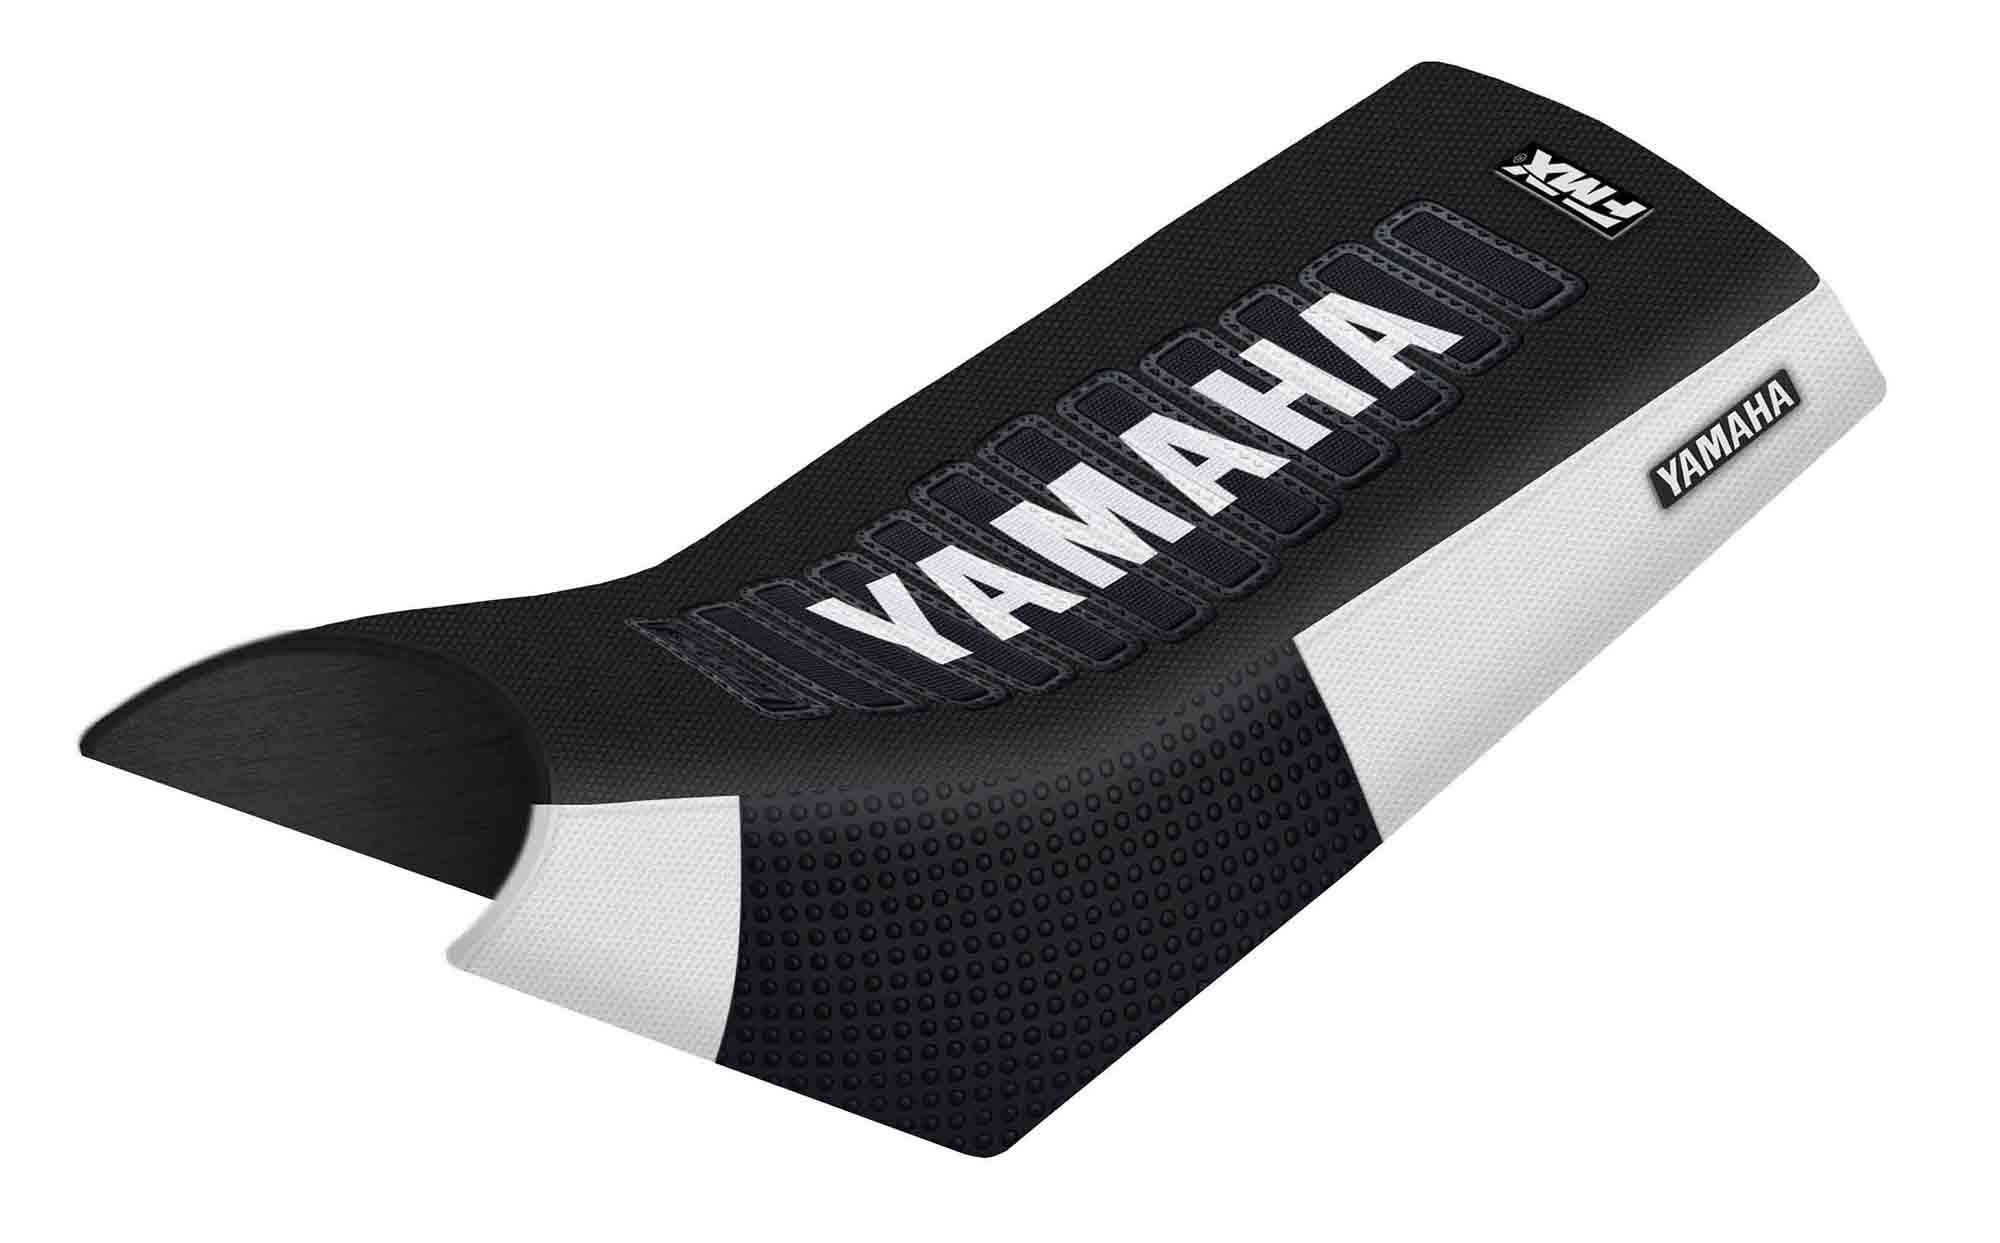 Funda Asiento Yamaha Warrior Ultra Grip Series. Es una obra de arte artesanal fabricada en Argentina, nuestros productos son de la mejor calidad.